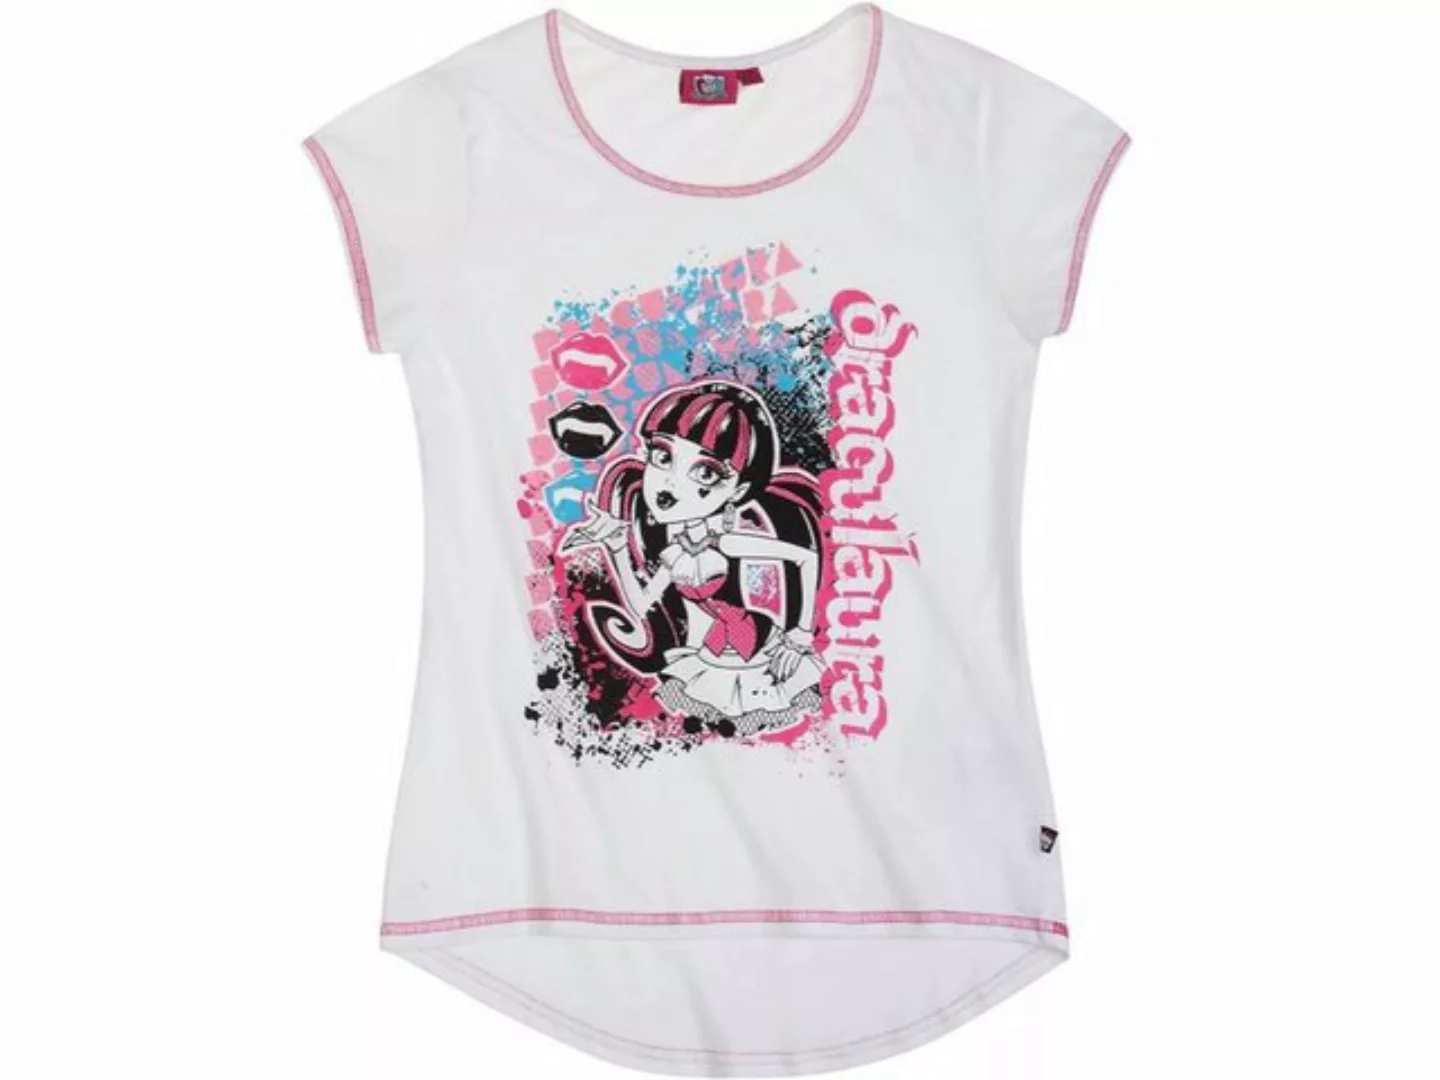 Monster High T-Shirt mit Draculaura, Clawdeen Wolf und Frankie Steen Motive günstig online kaufen